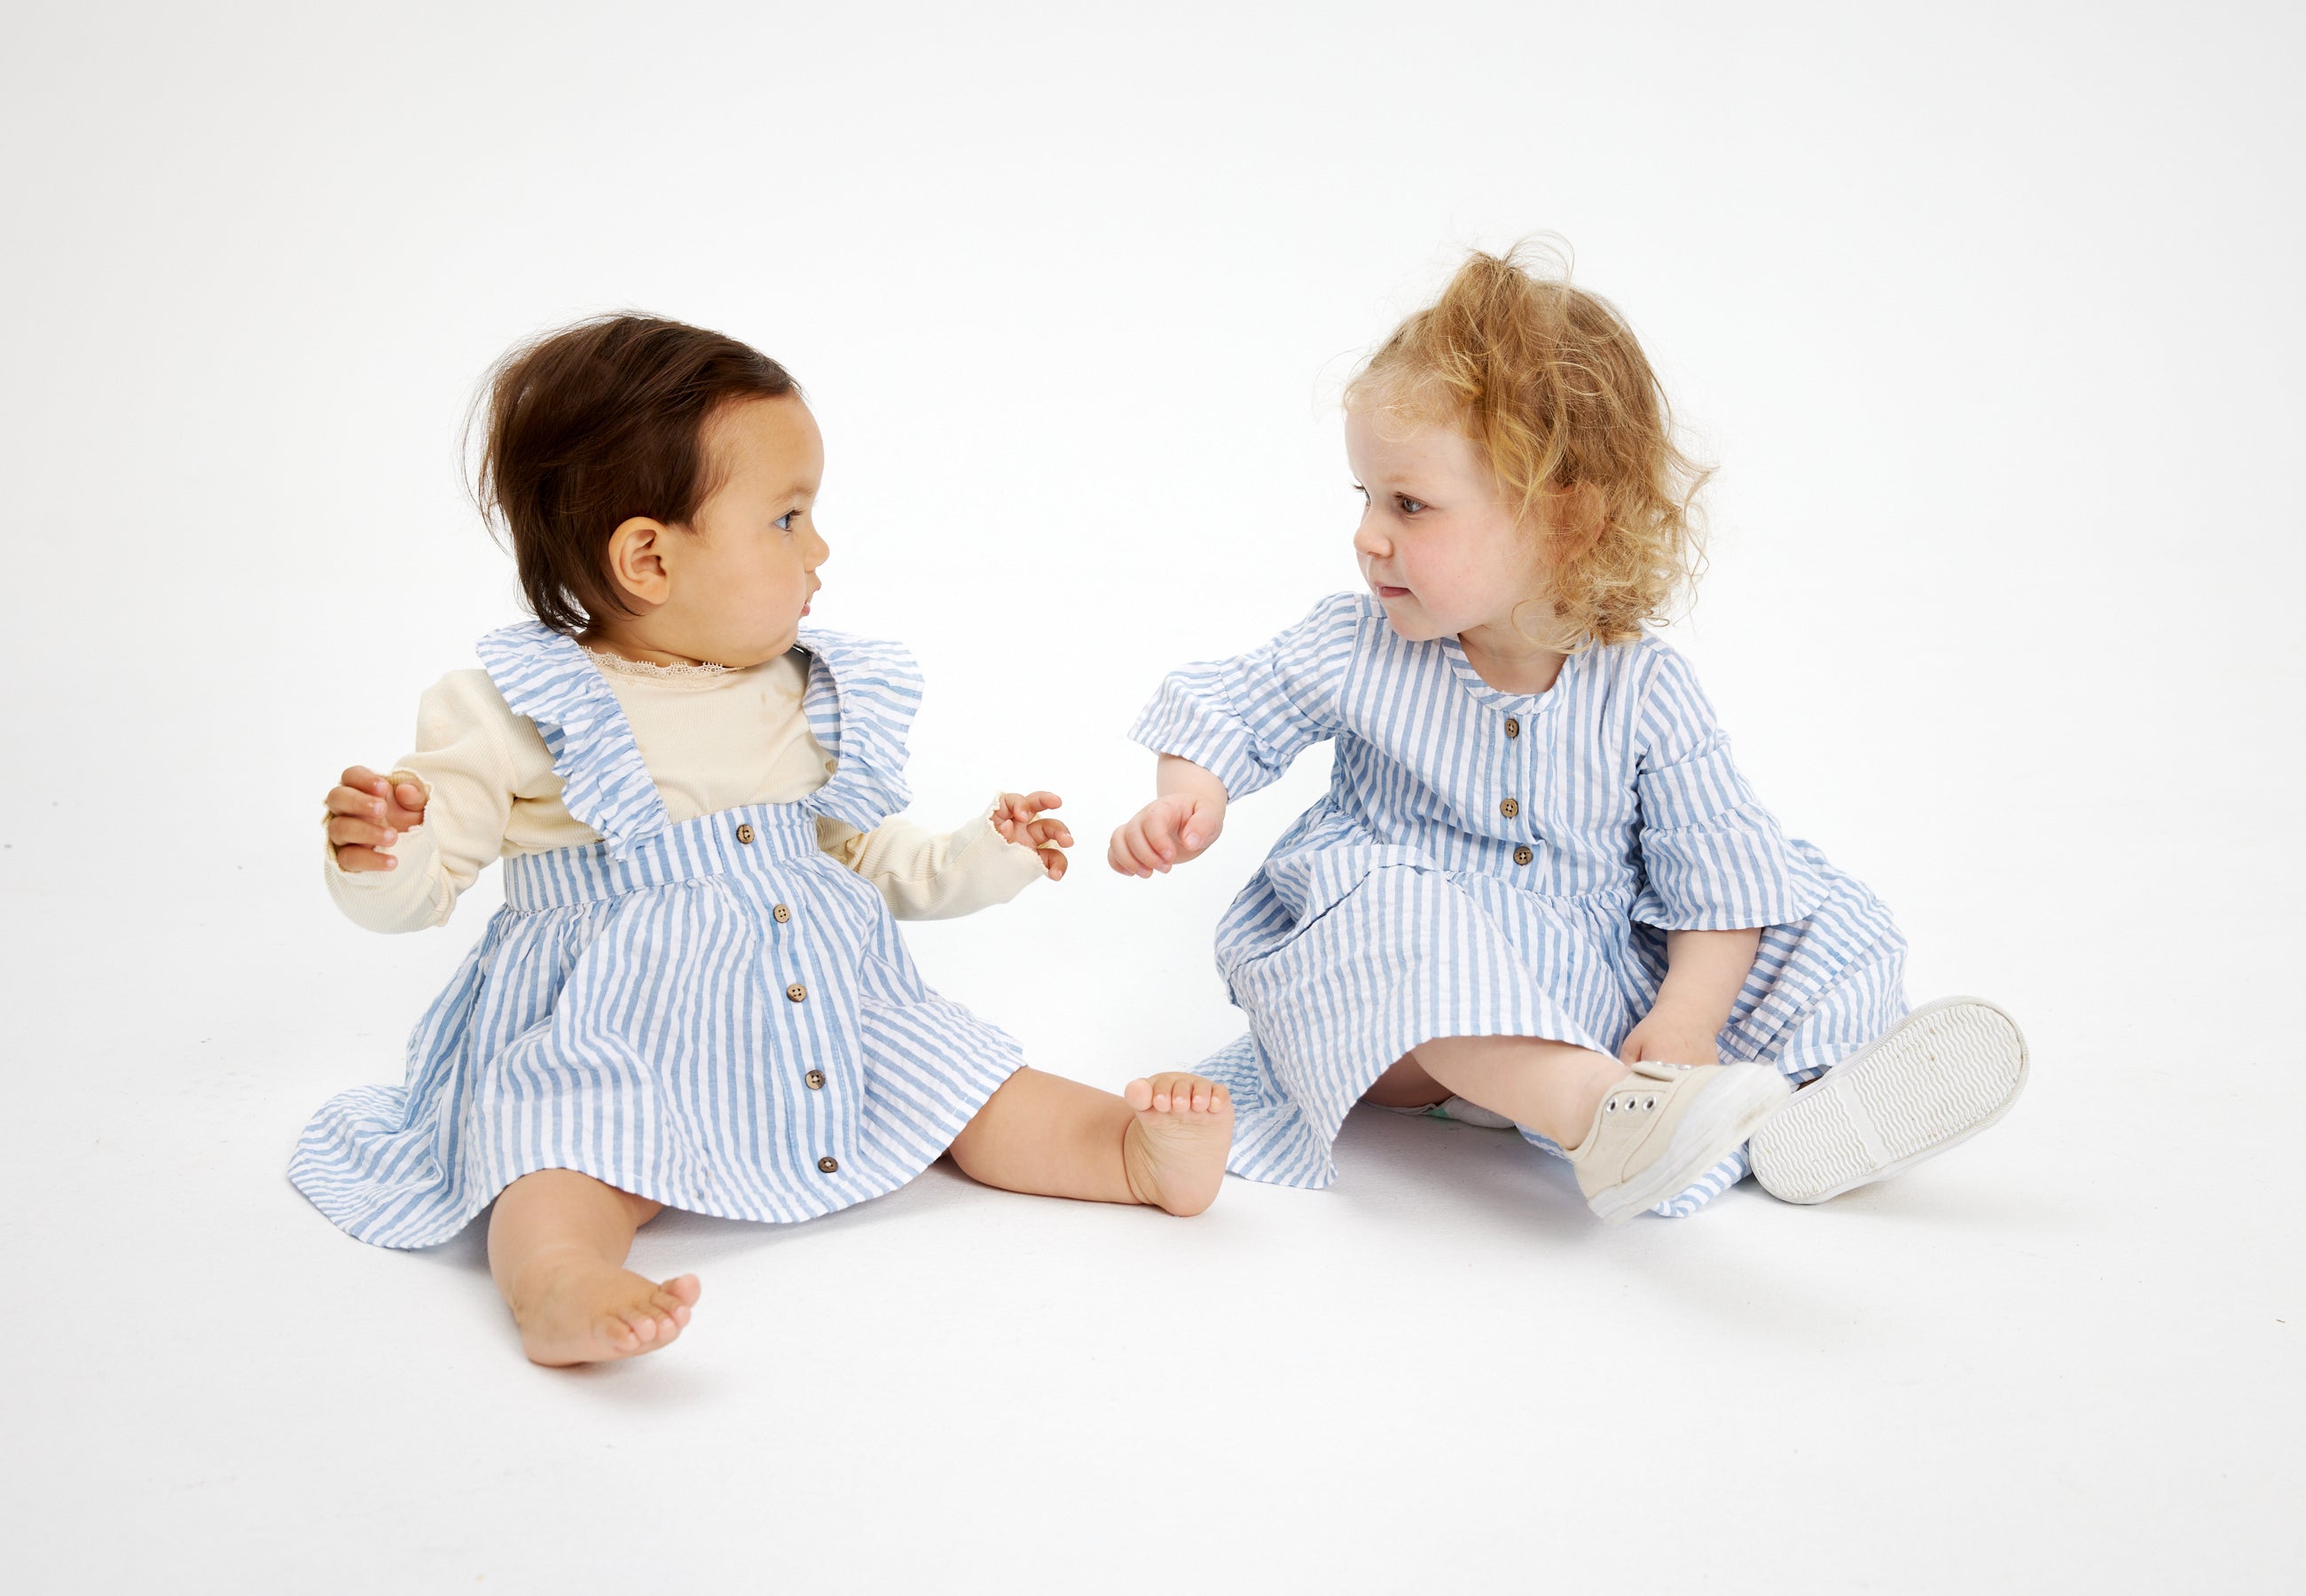 Shop børnetøj til børn i alderen 0-4 år. Her hos THE NEW siblings finder du bl.a. nye styles fra Autumn23 kollektionen